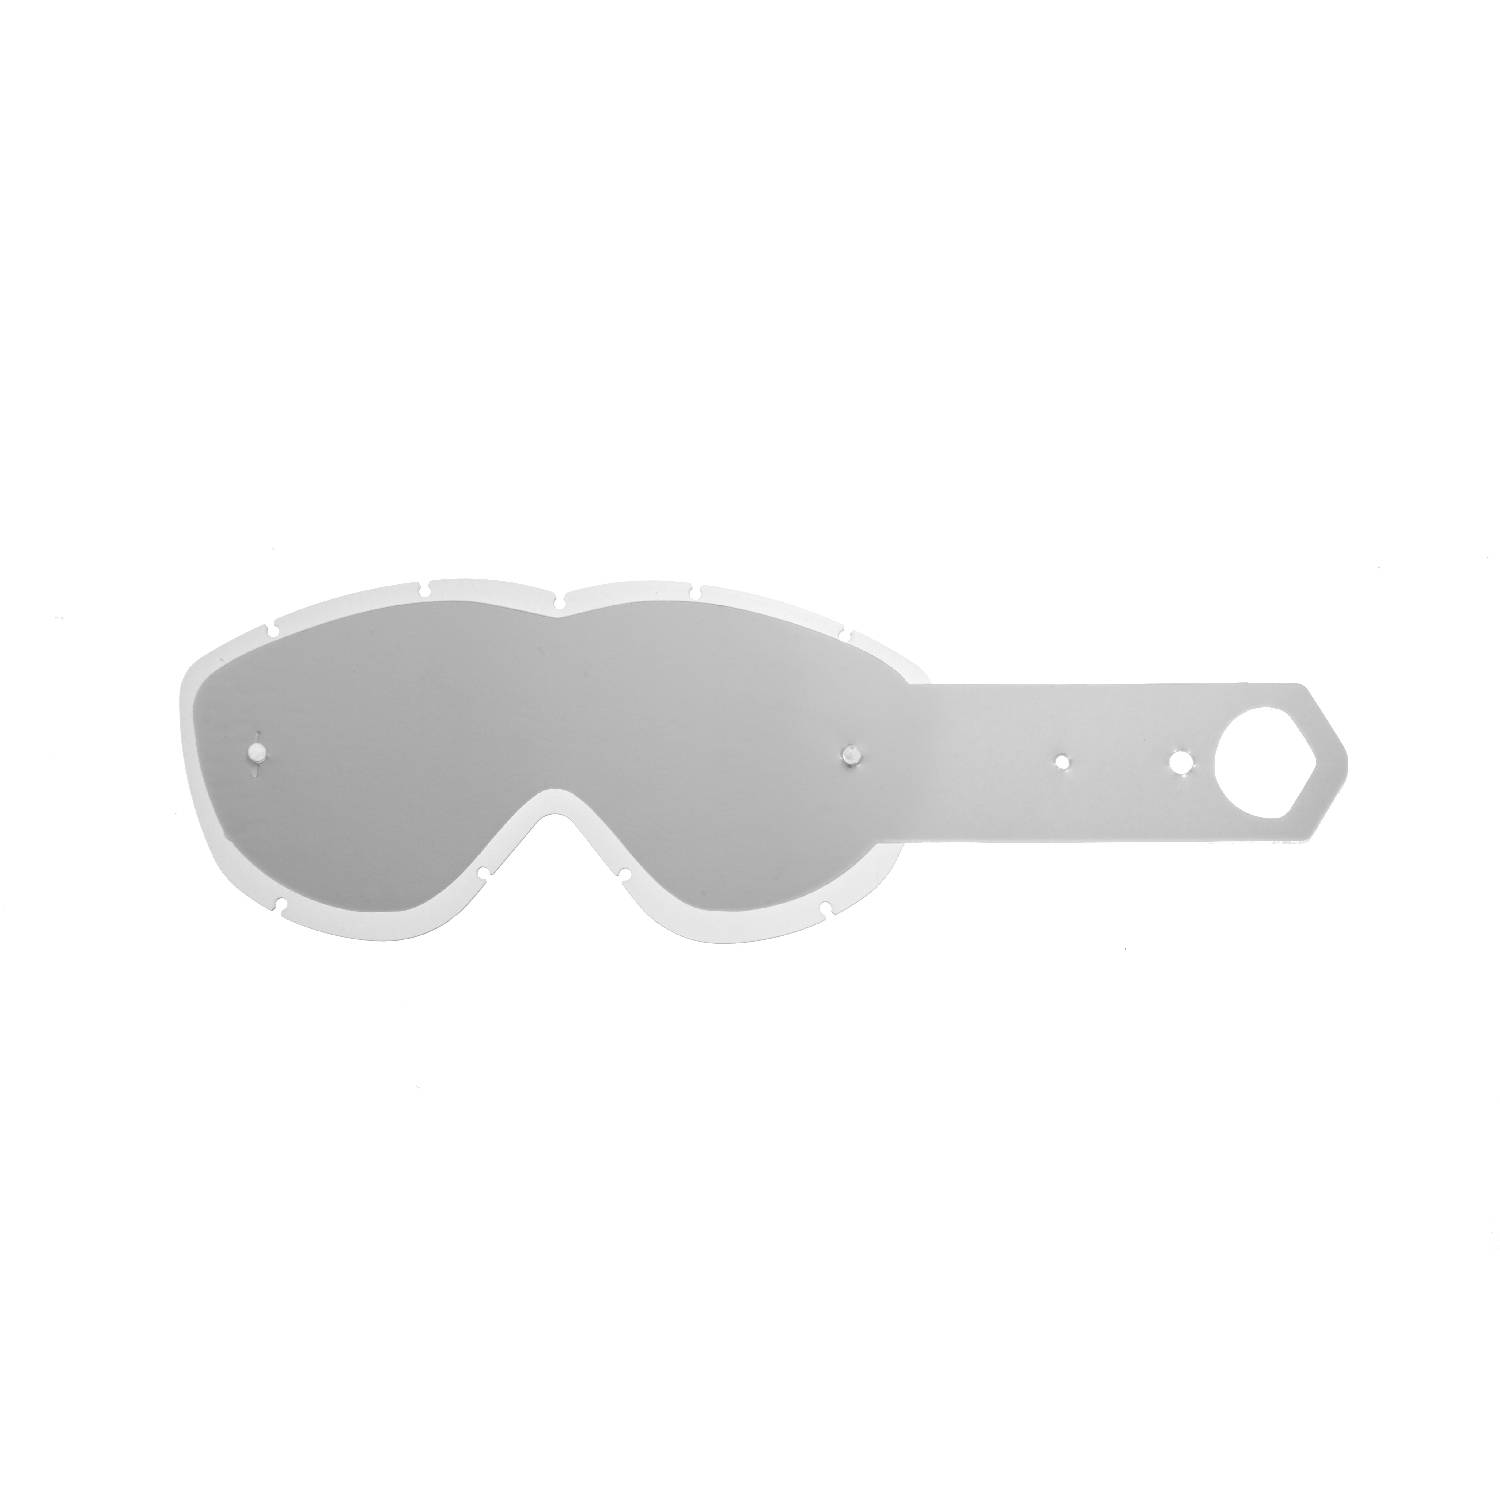 Lente trasparente + 10 Strappi (Combo) compatibile per occhiale/maschera Spy Alloy / Targa